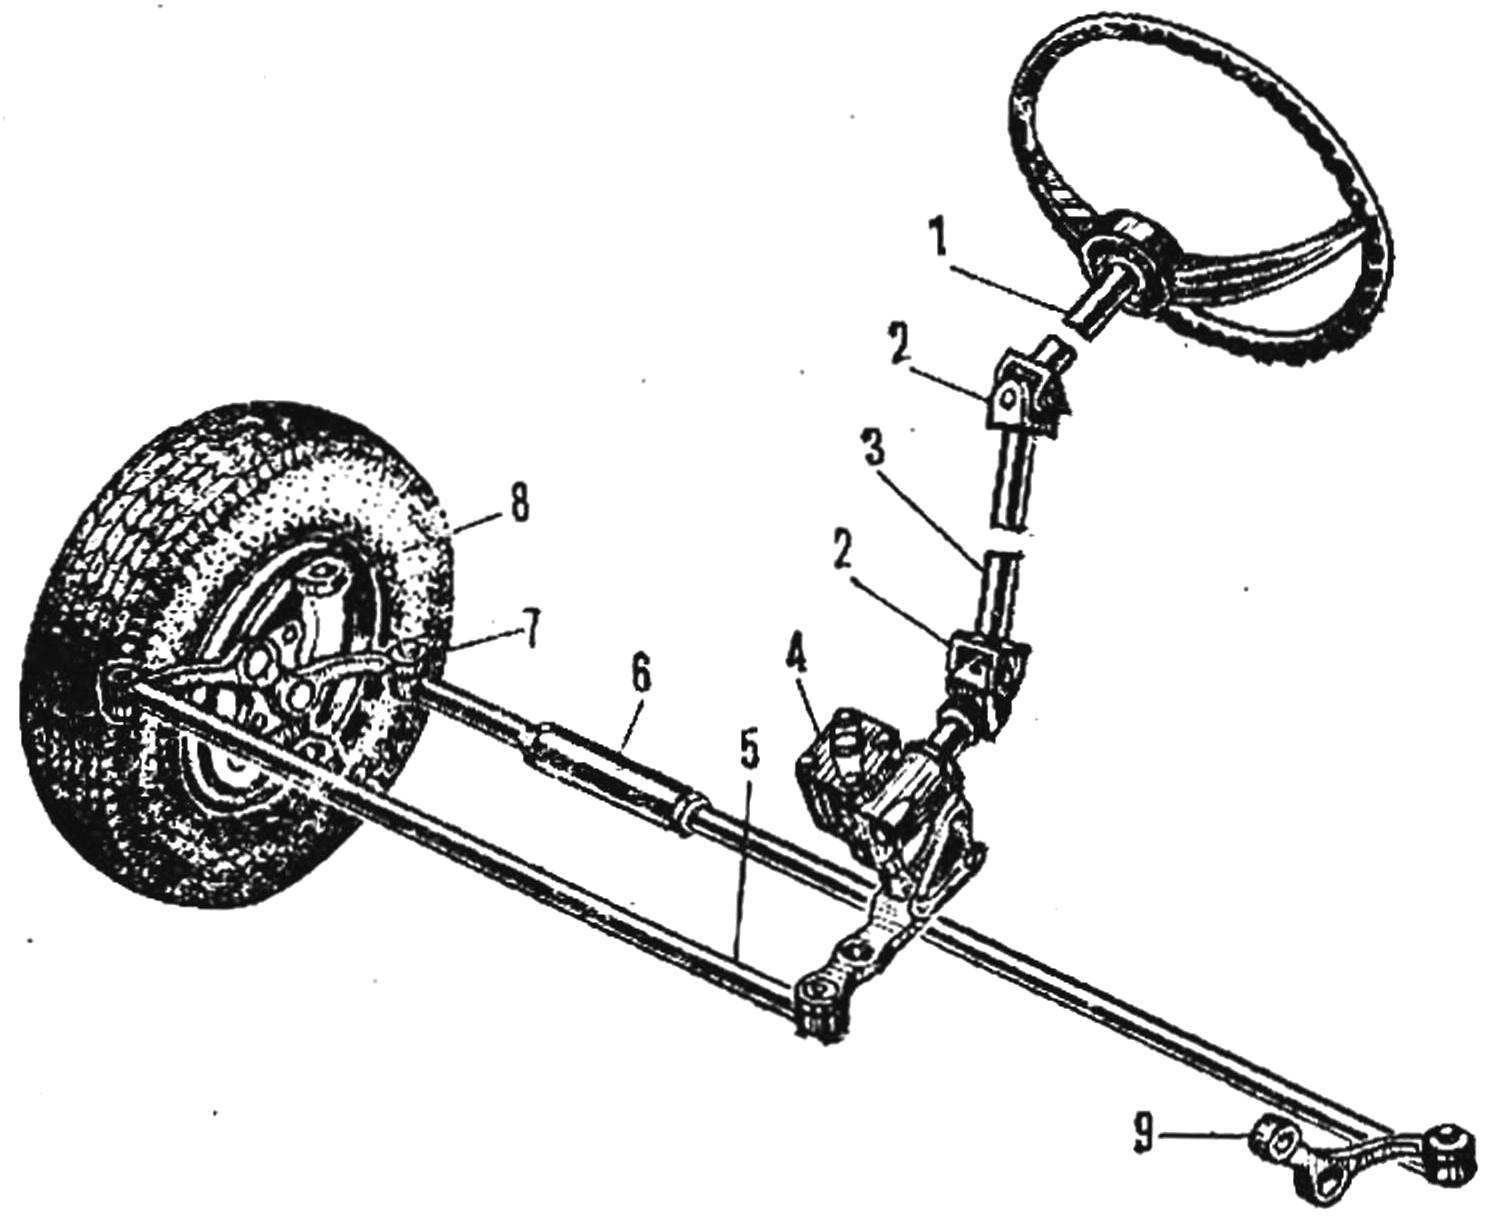 Fig. 7. Steering